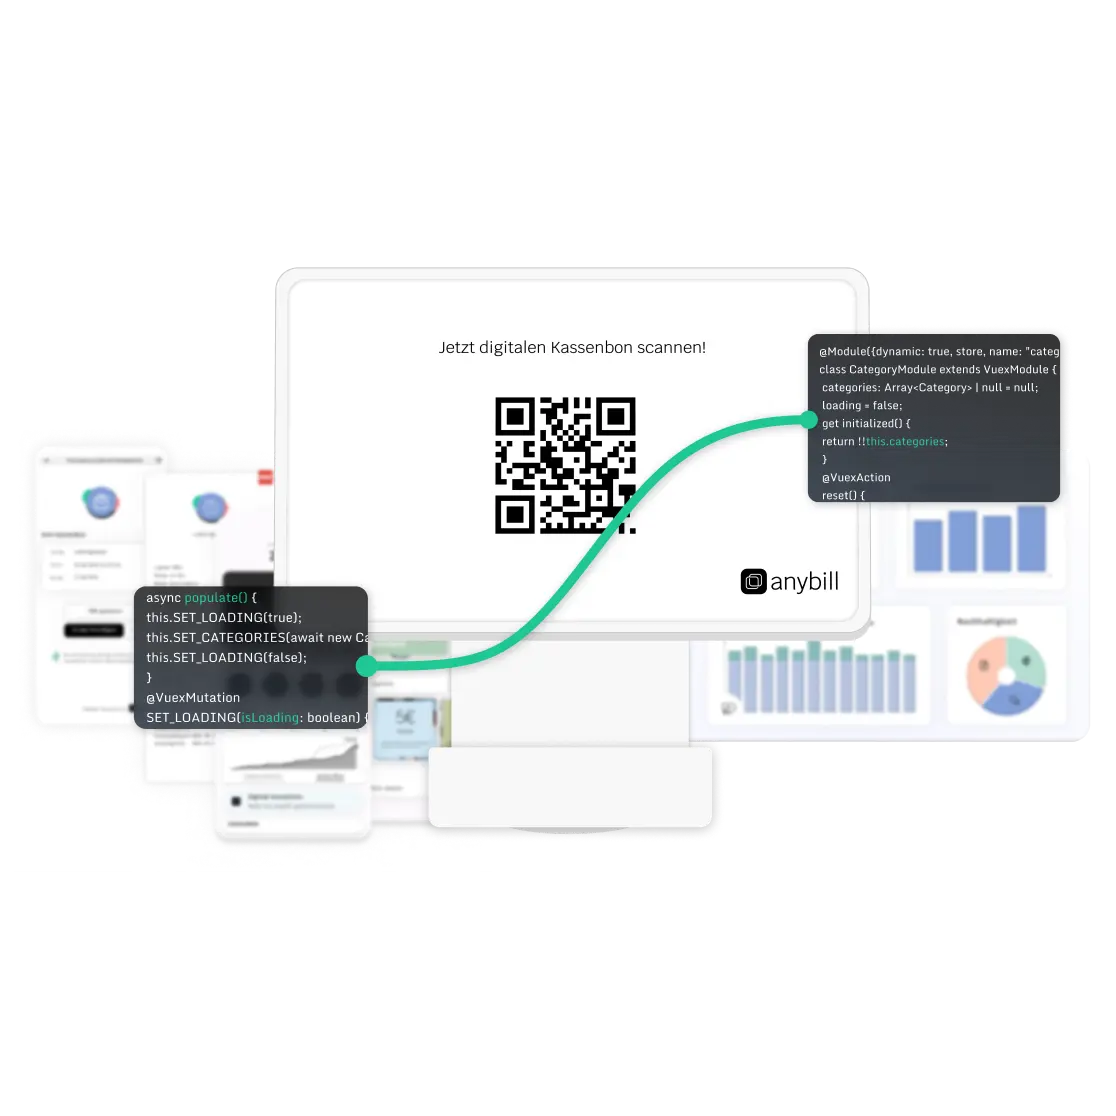 Illustrierte Darstellung eines digitalen Kassenbons, eines Bildschirms mit einem QR-Code zum Scannen, eines digitalen Kassenbons im PDF Format, dem anybill Portal und Codeausschnitten